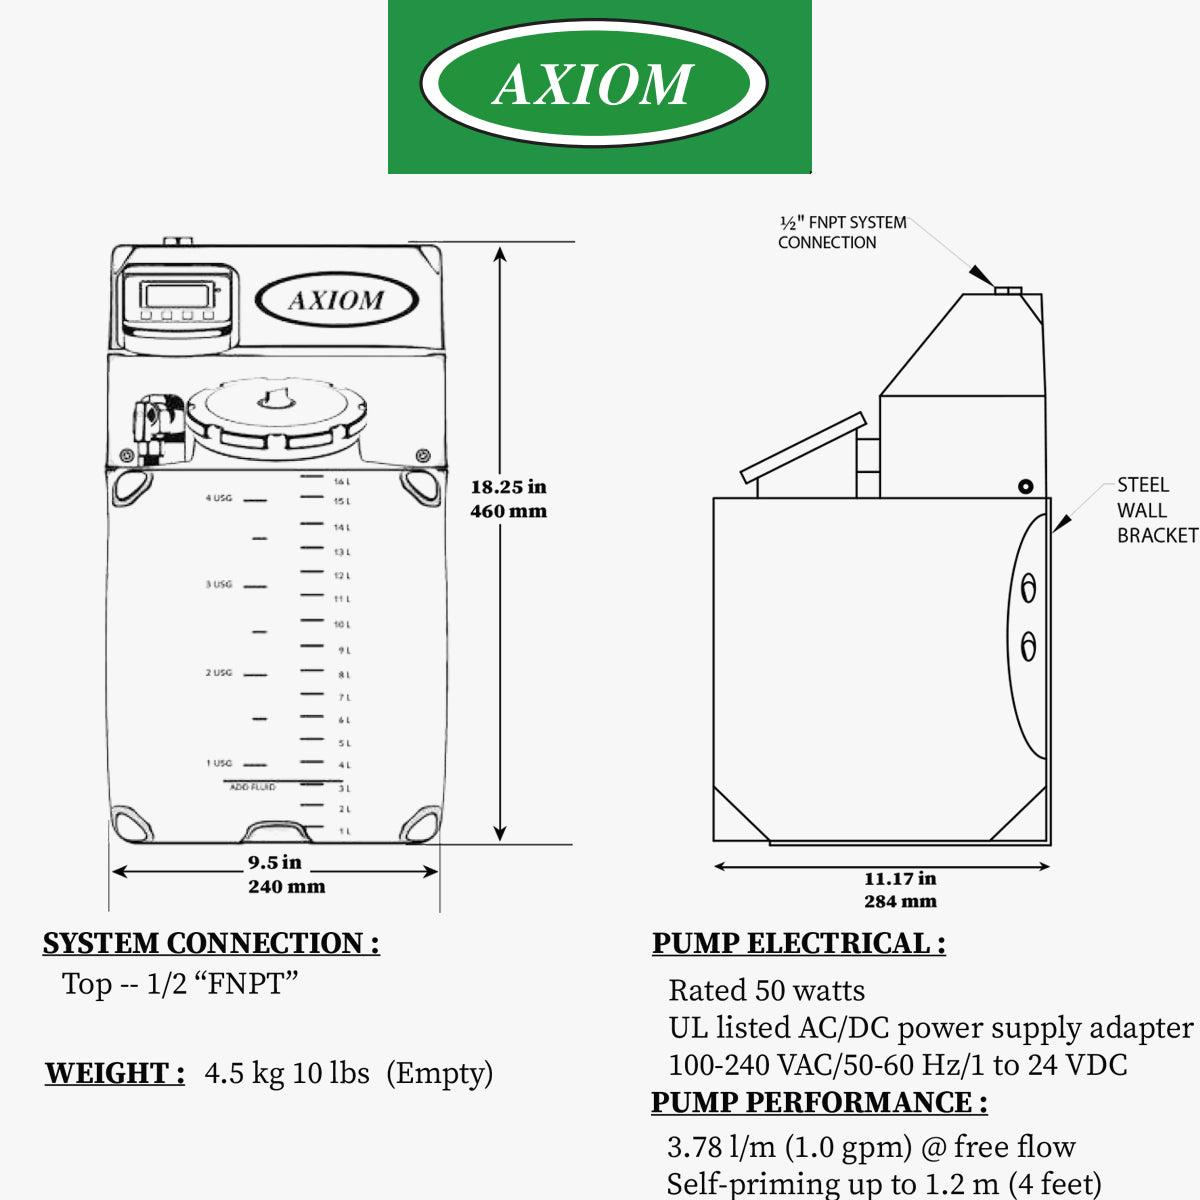 Axiom DMF150 - Pressure Pal Digital Mini System Feeder - 4.6 Gallon